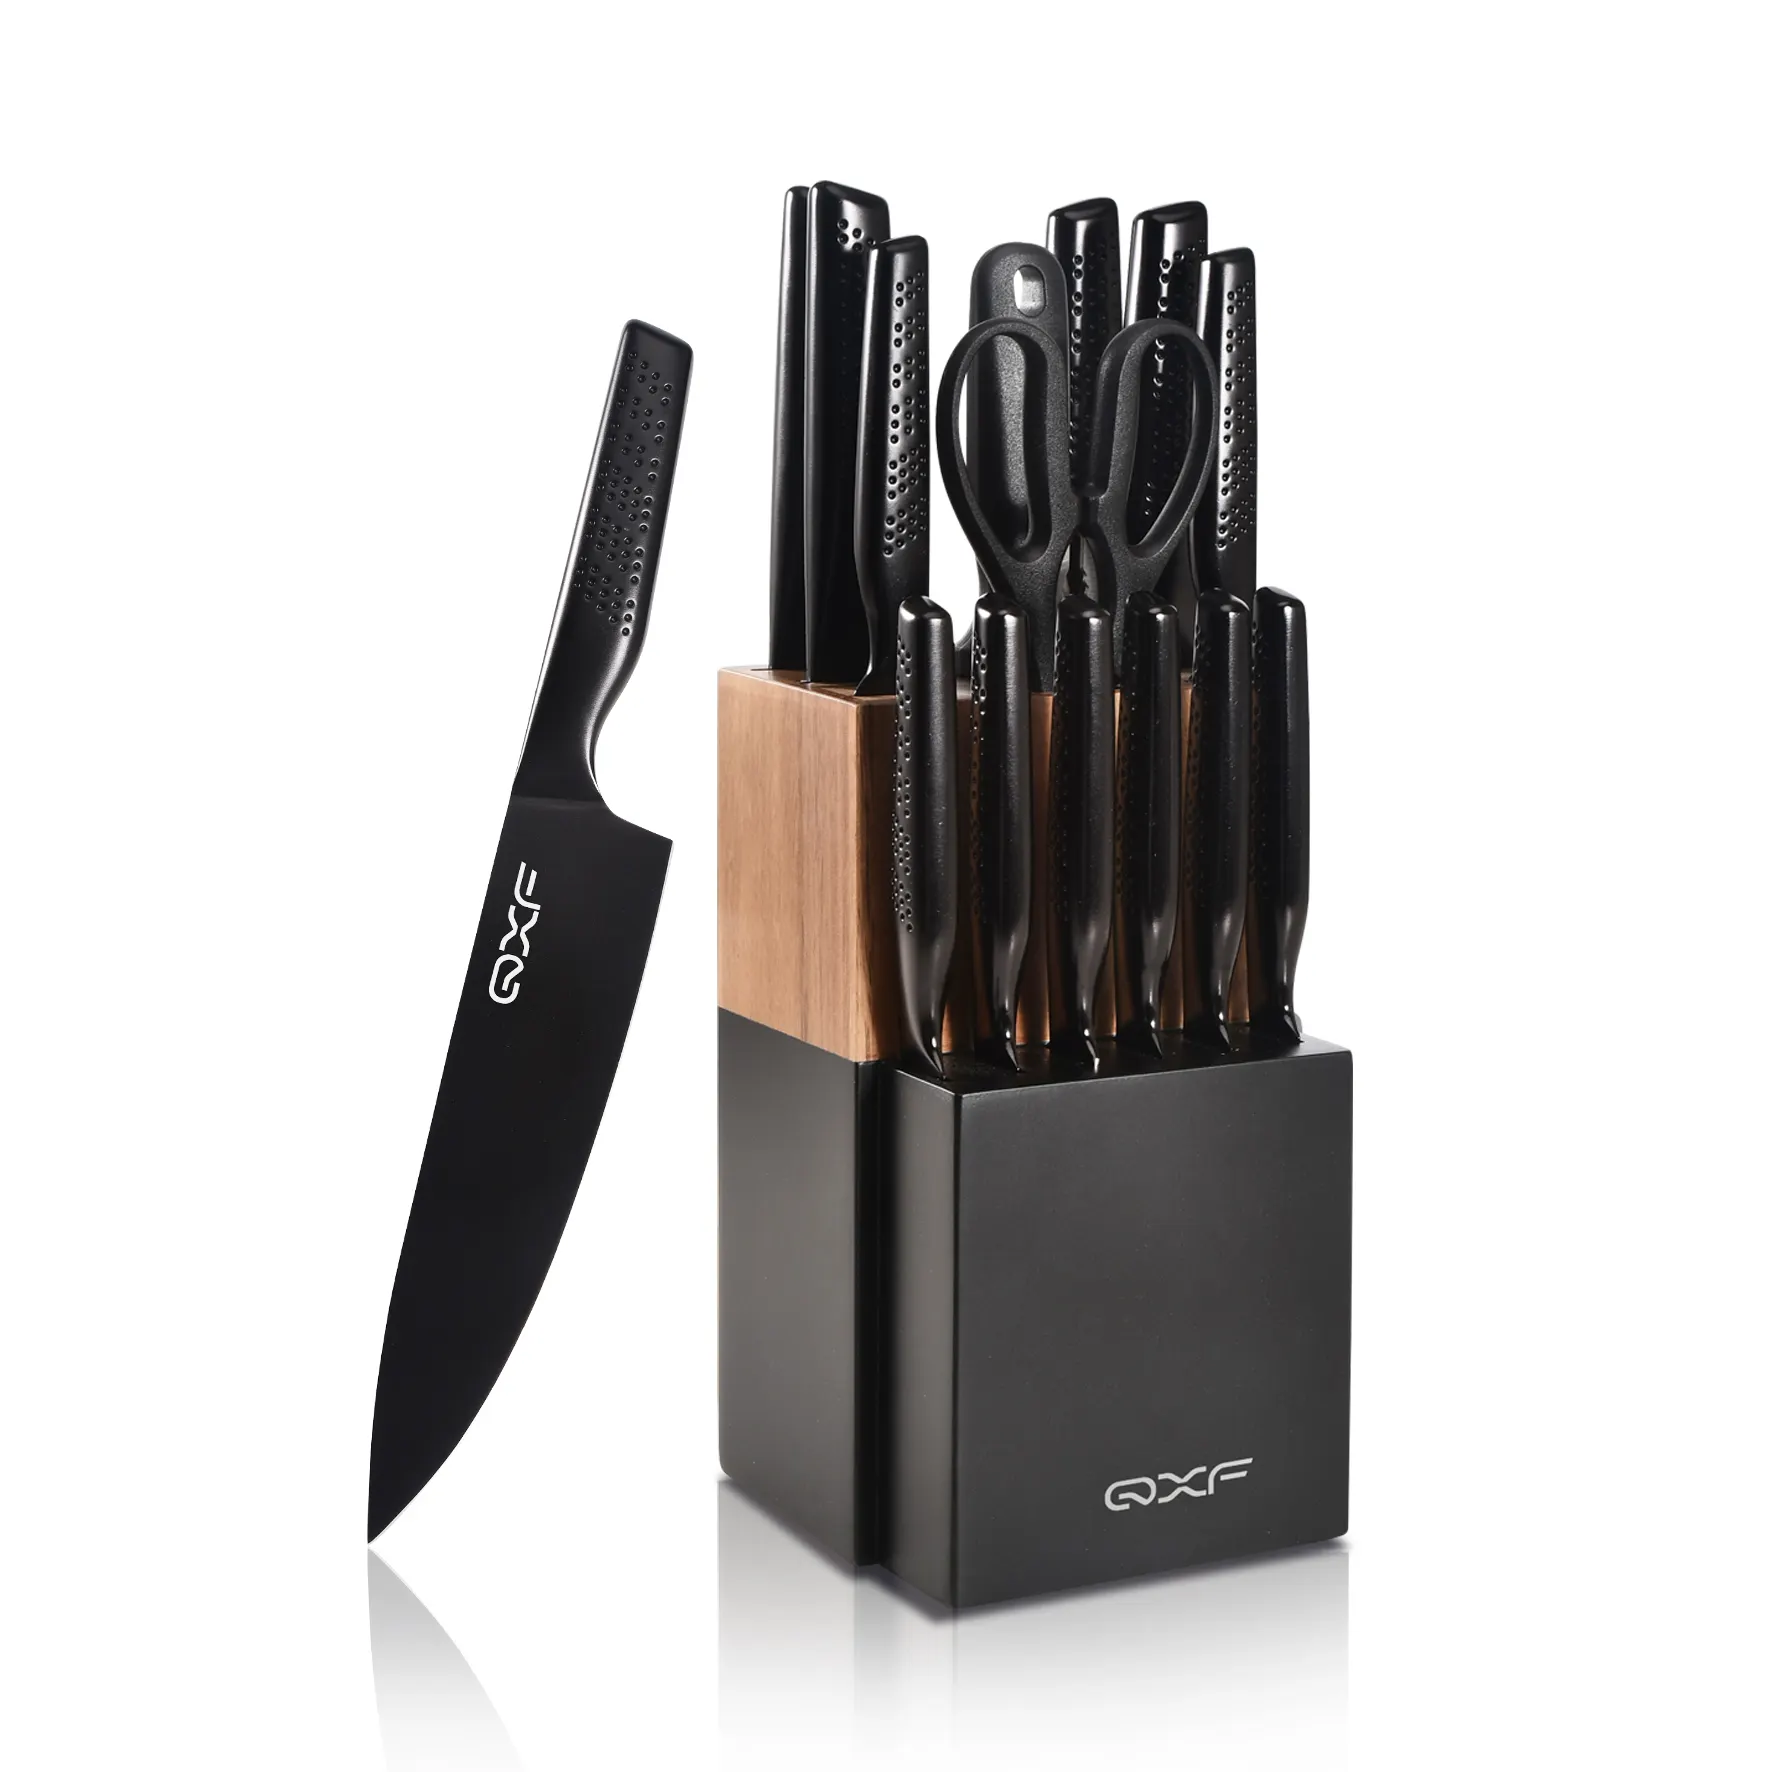 Nouveau design de la série Stark 15 pièces ensemble de couteaux de cuisine à revêtement noir couteau de chef en acier inoxydable Super Sharp avec porte-couteau en bois